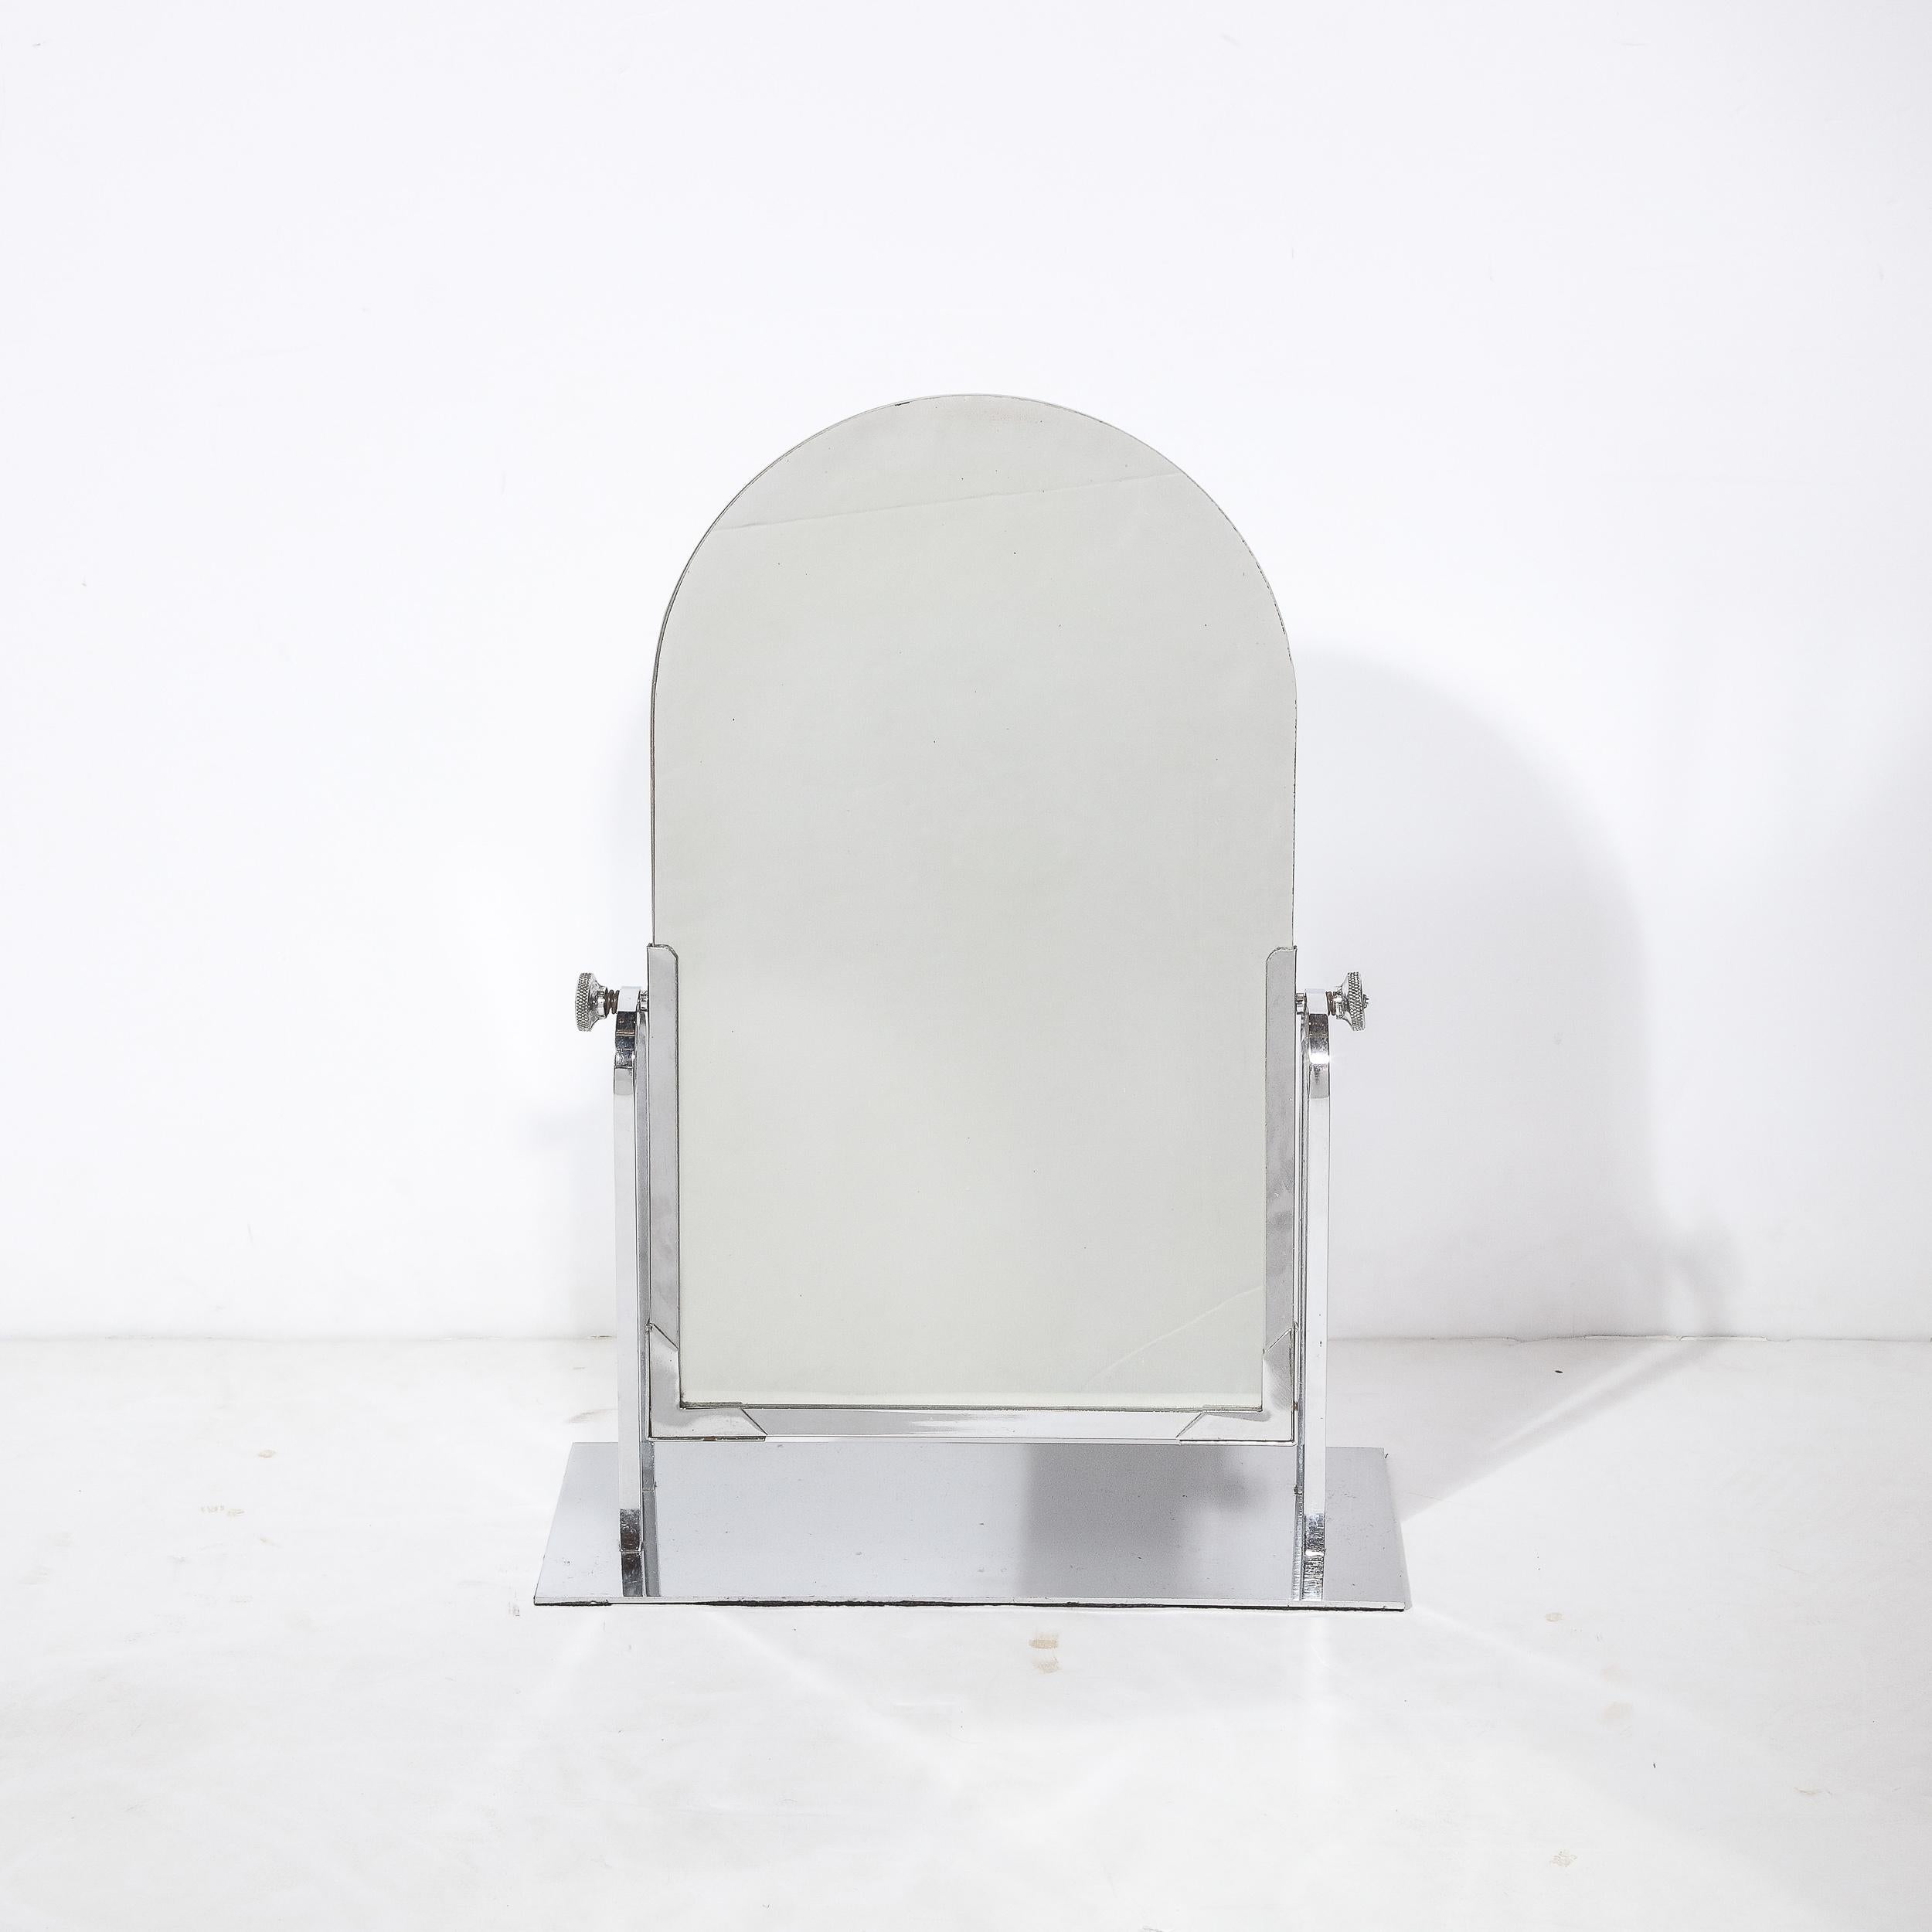 Dieses Paar verchromter Tischspiegel stammt aus den Vereinigten Staaten um 1935, ein brillantes Beispiel für stromlinienförmige Art-Déco-Accessoires in großer  Zustand und mit perfekter Funktionalität. Das Paar verfügt über einen bogenförmigen